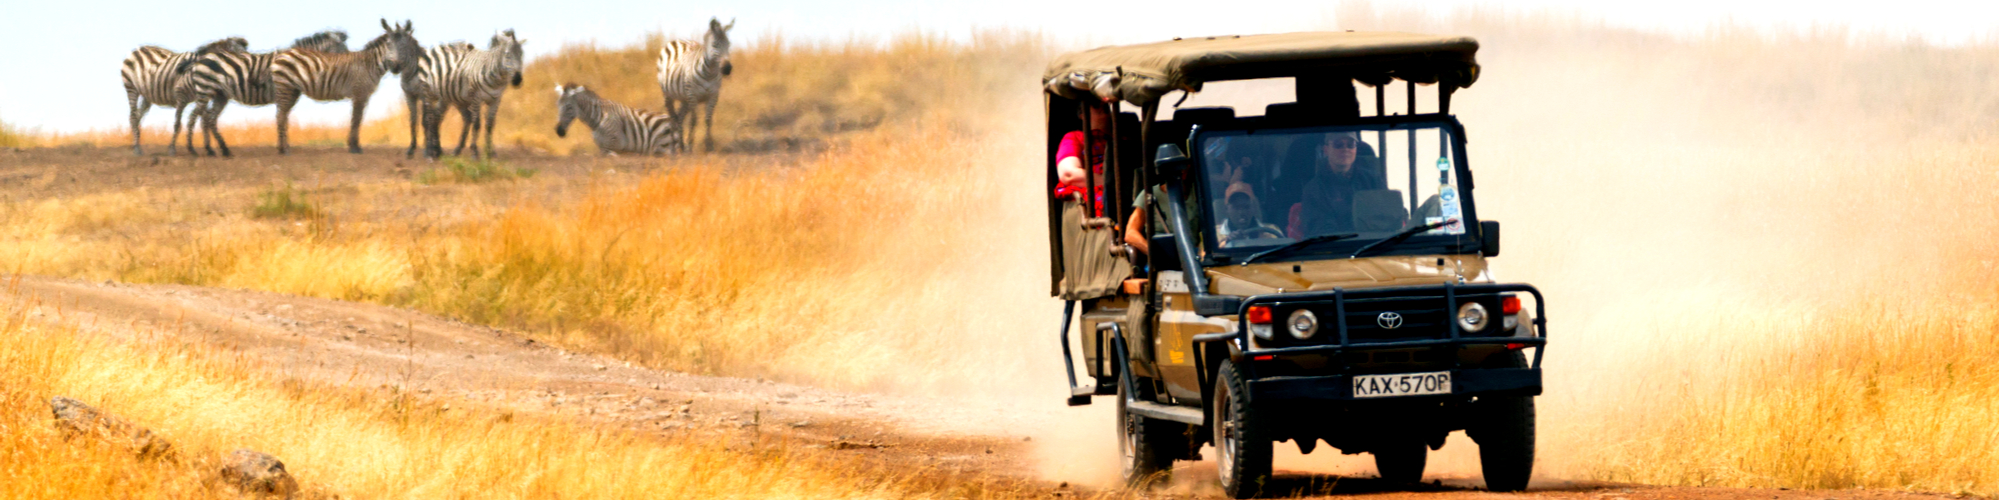 Kenya Sightseeing Tours